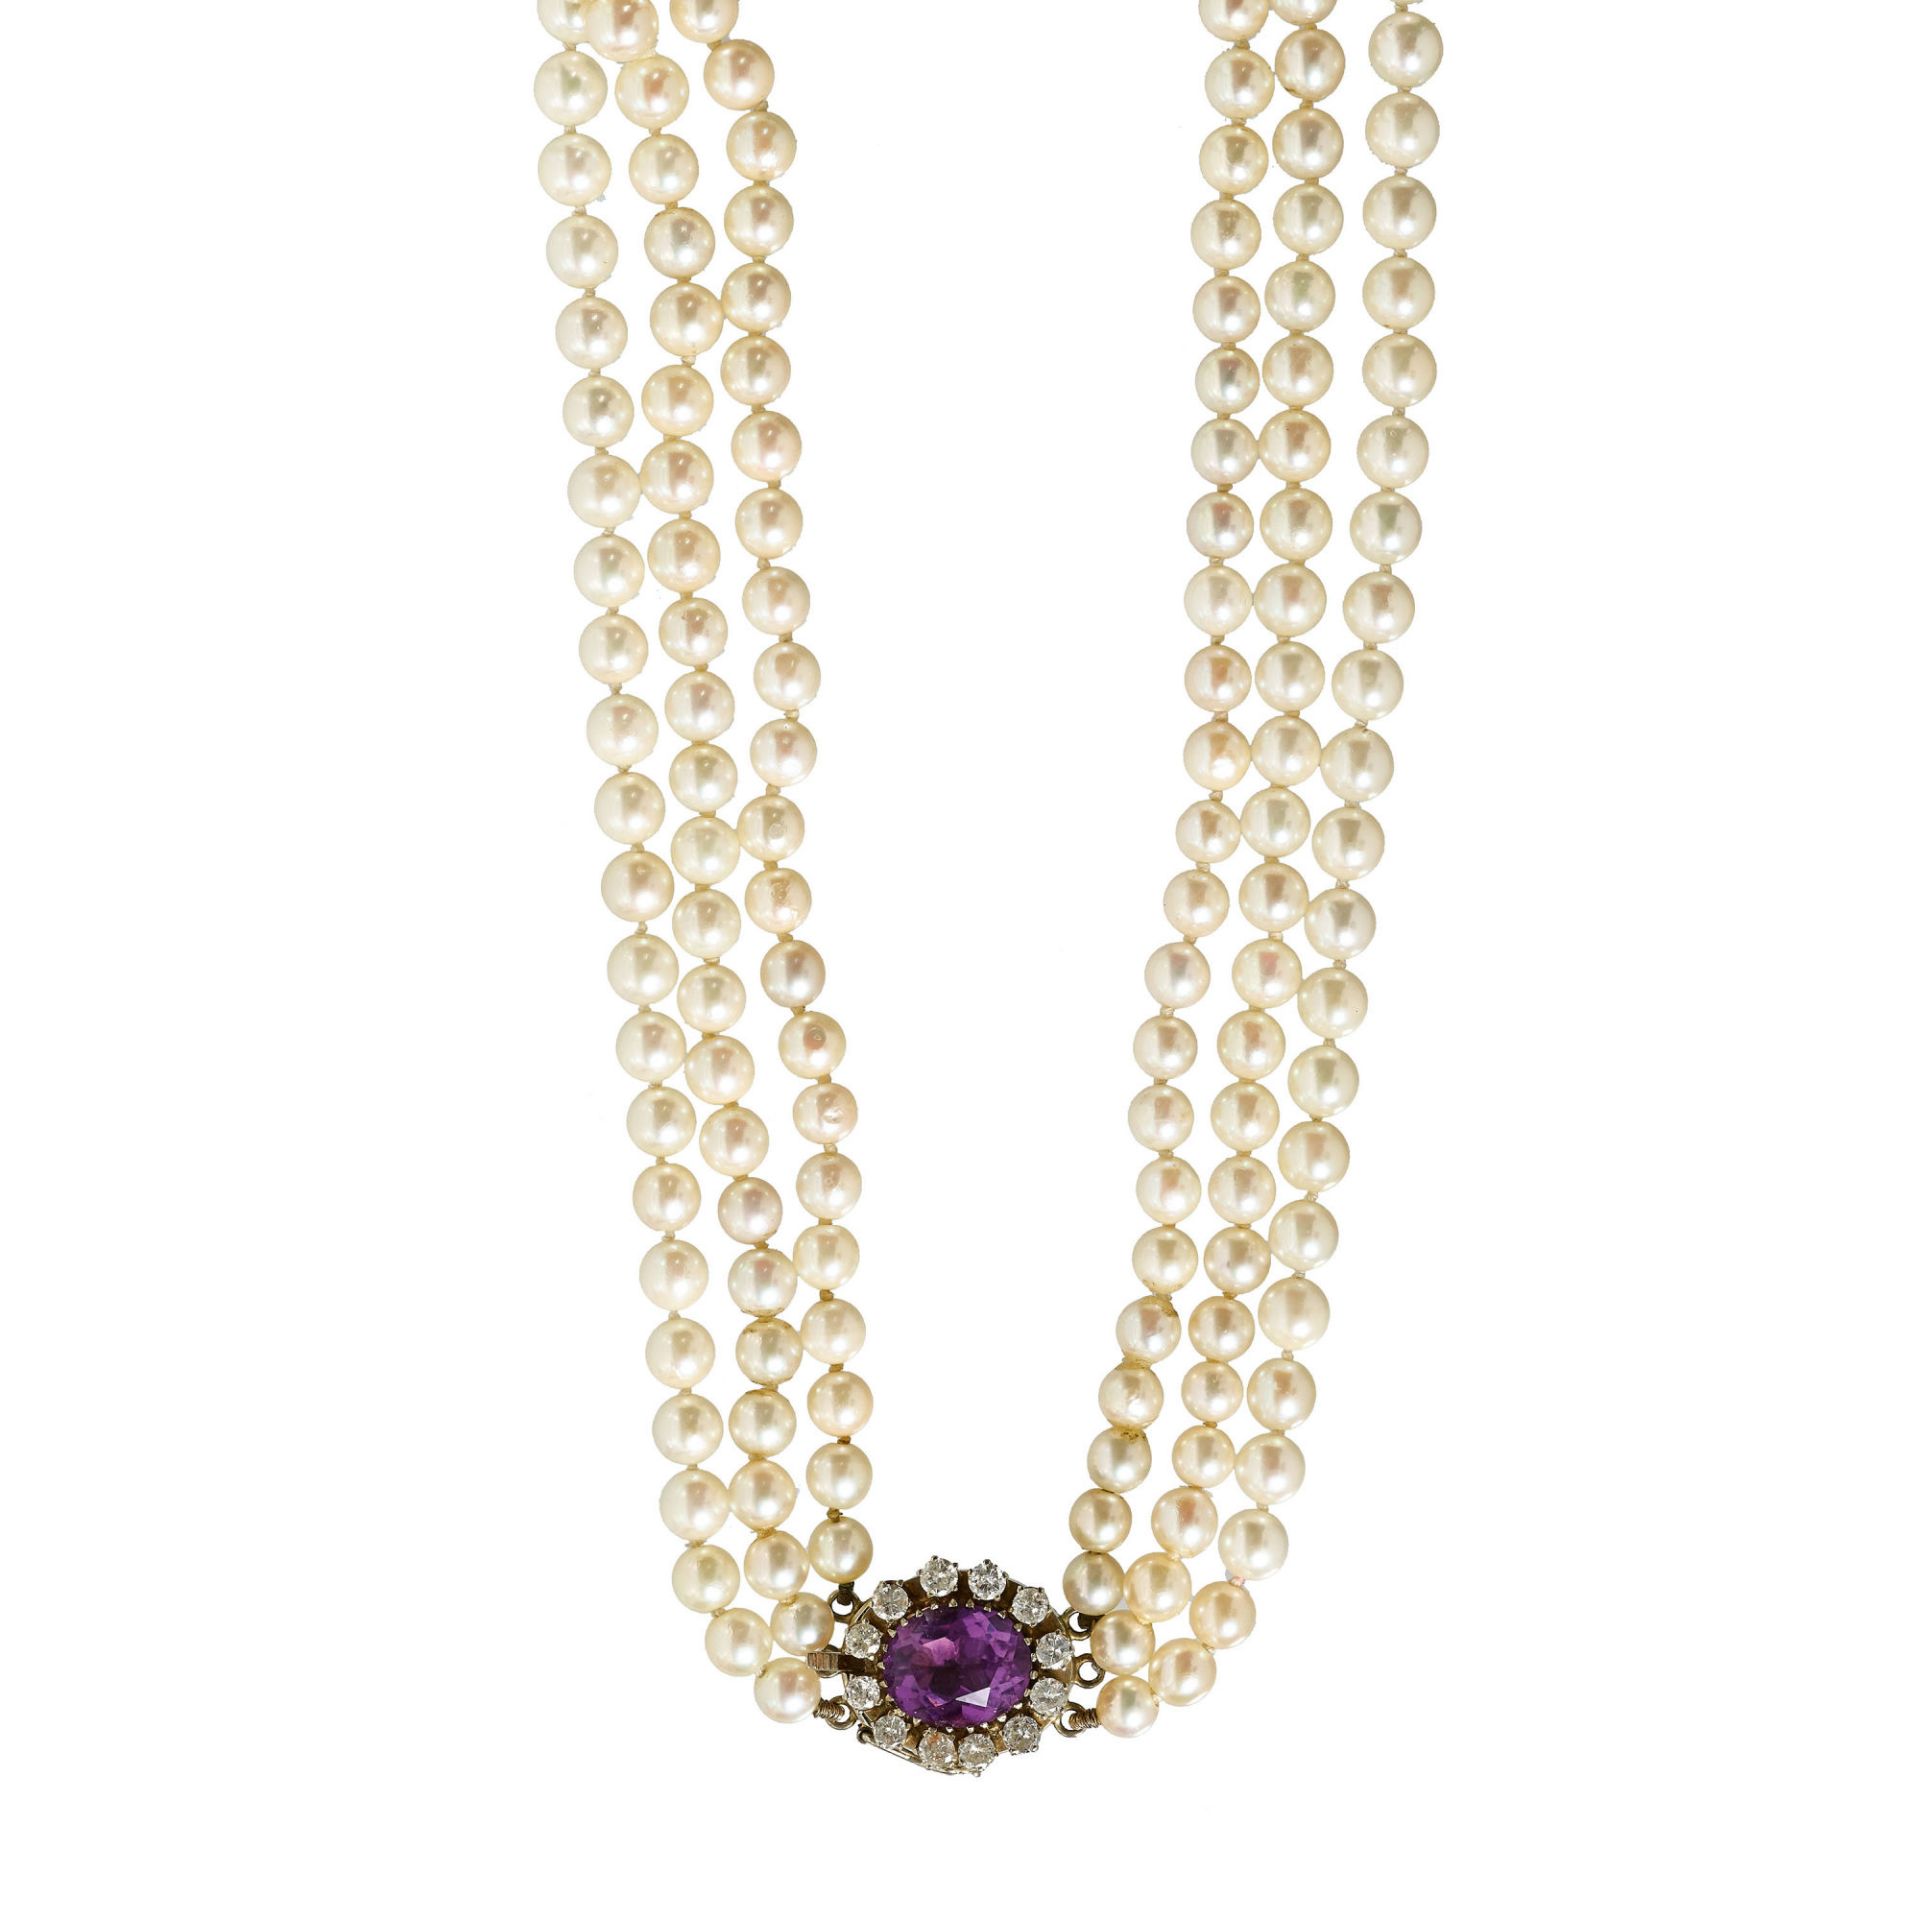 AMETHYST-PERLEN-COLLIER / Amethyst-pearl-necklace  - Bild 2 aus 2